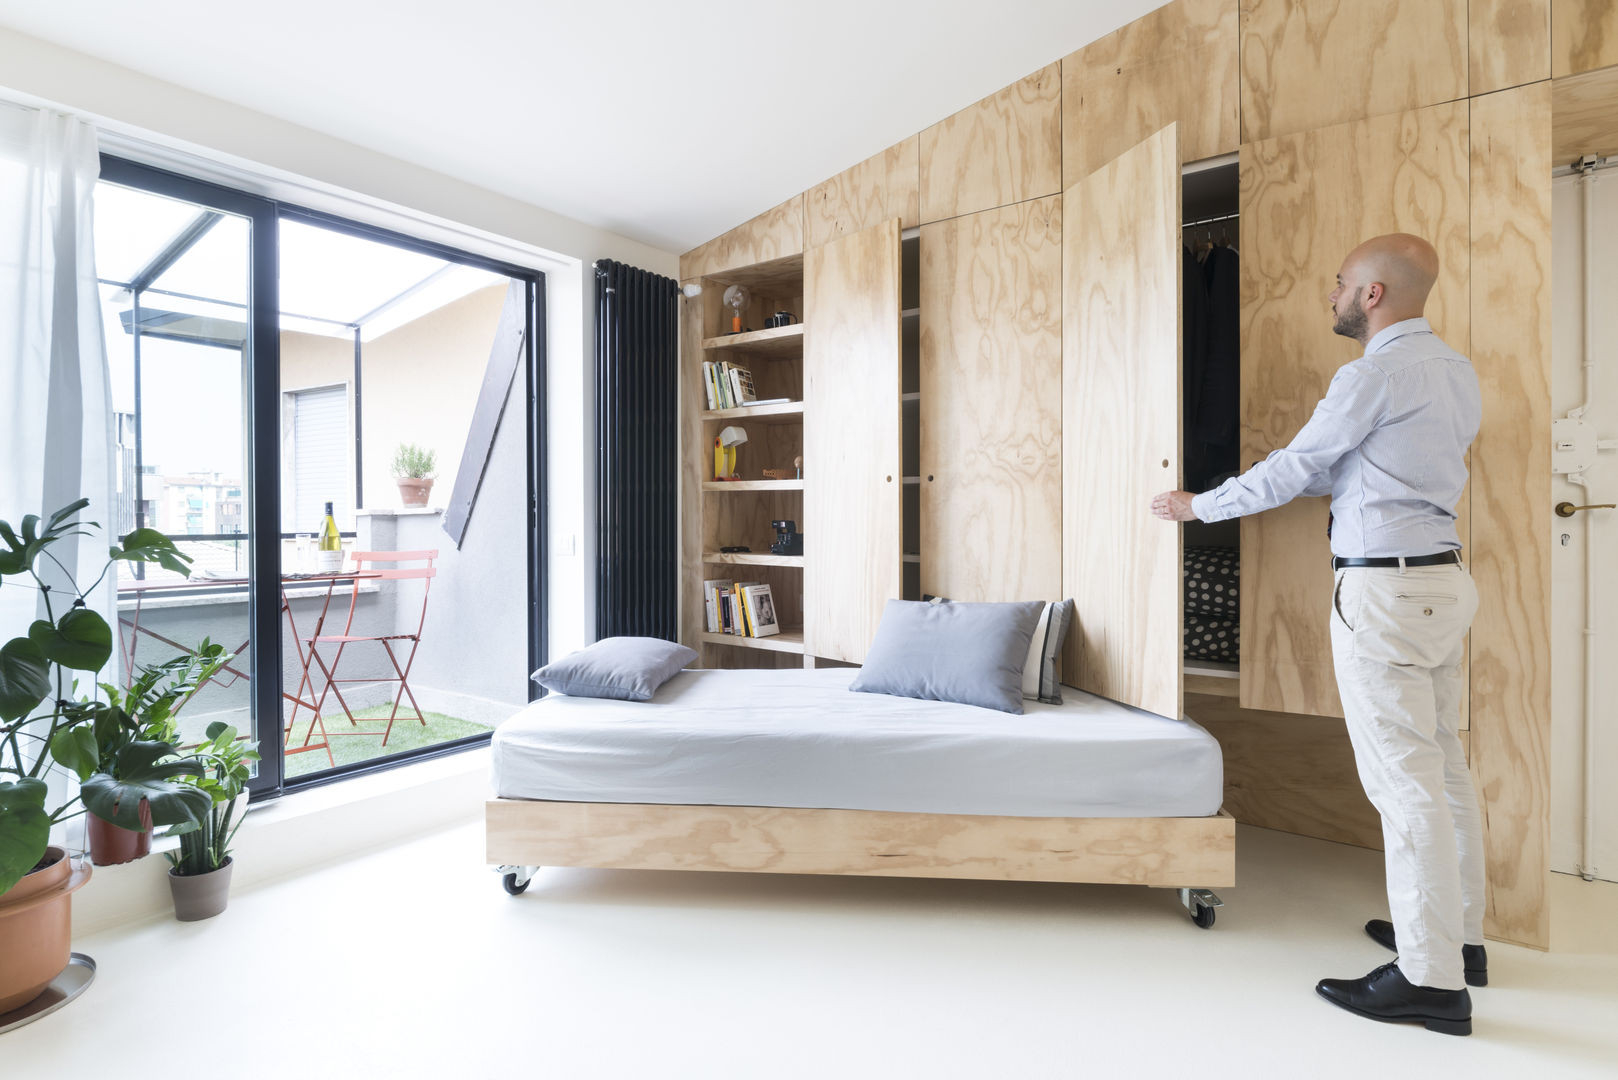 44 Traumhaft Schöne Betten Perfekt Für Kleine Schlafzimmer | Homify regarding Bett Für Wohnzimmer